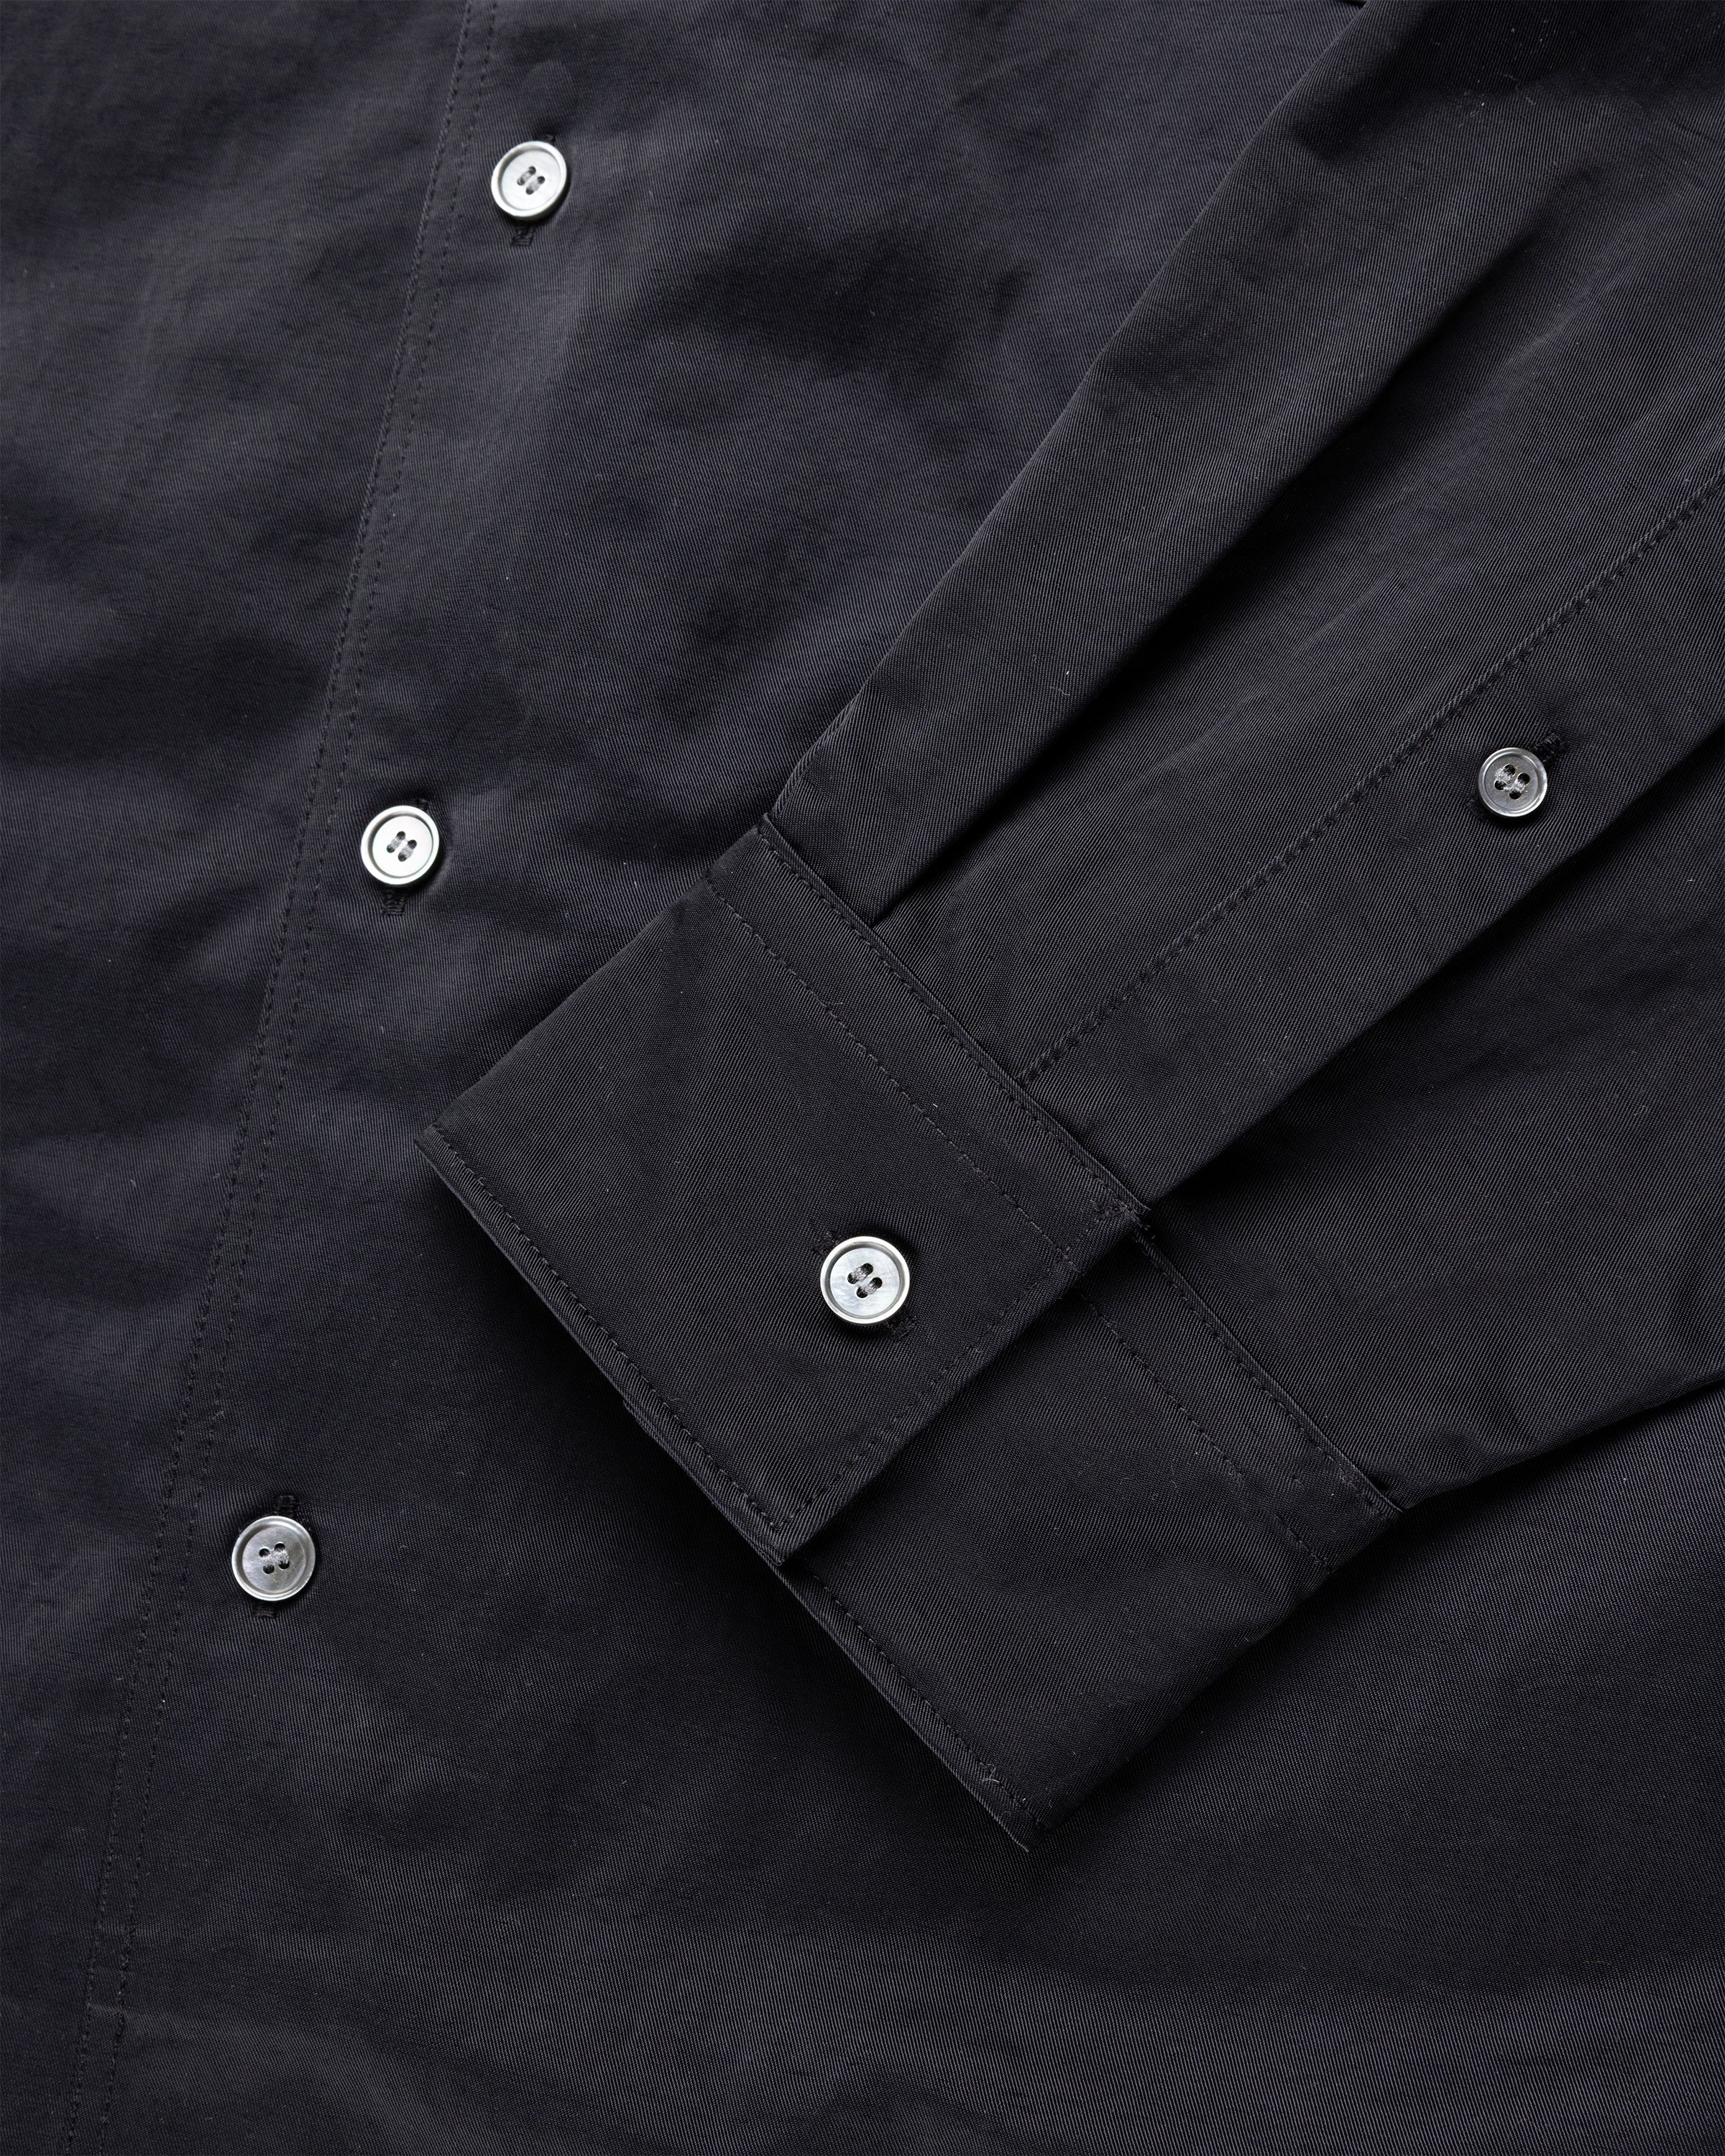 Acne Studios – Nylon Overshirt Black | Highsnobiety Shop